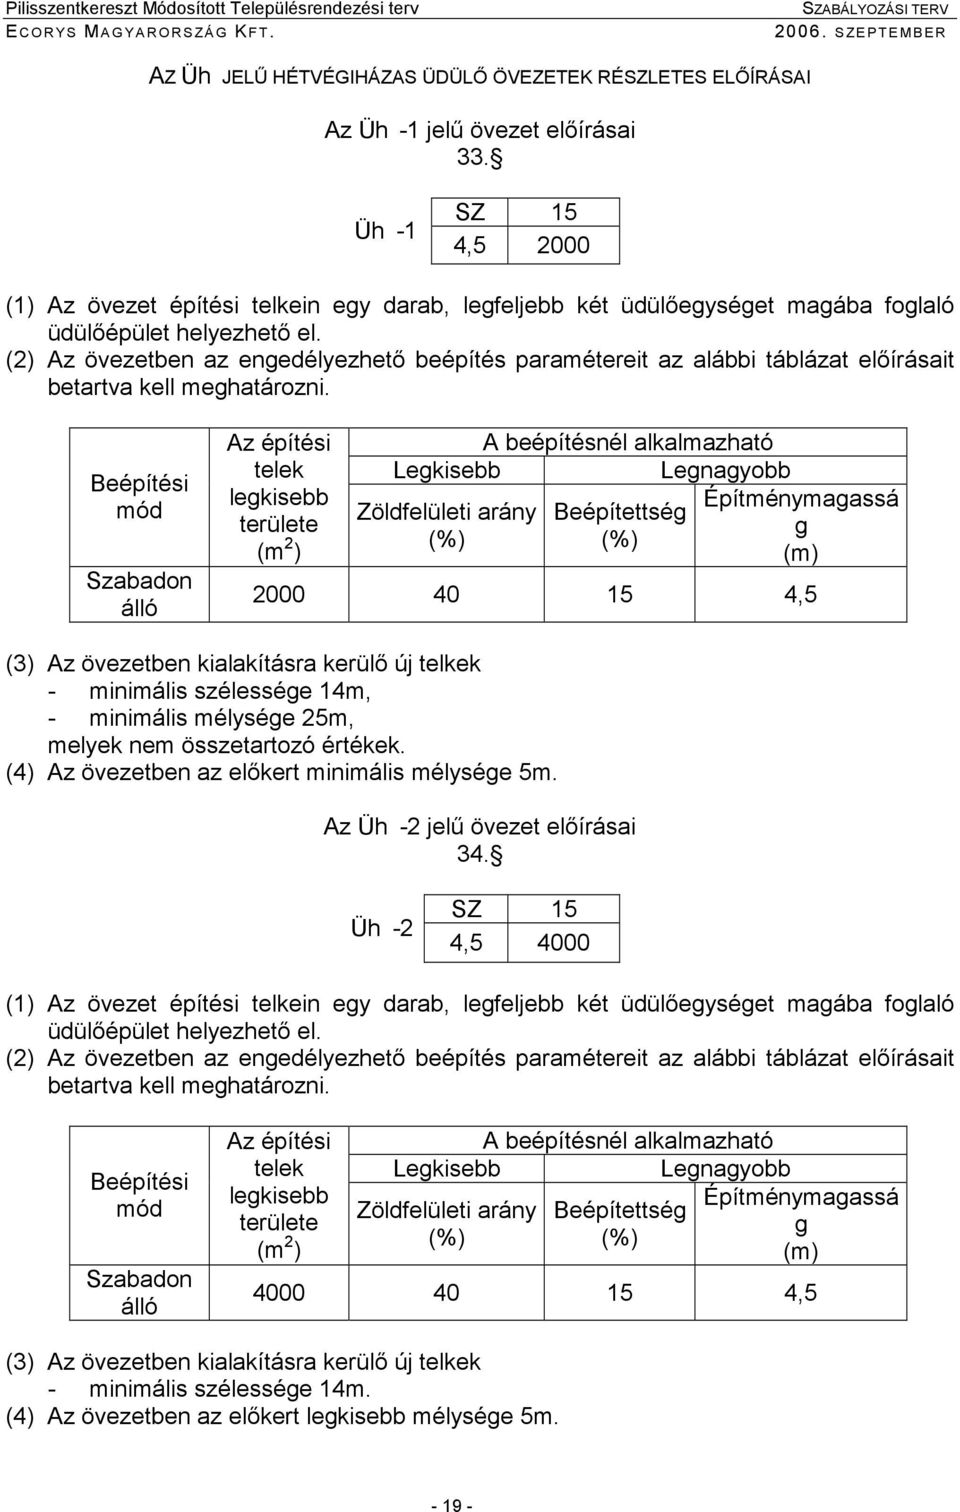 (2) Az övezetben az enedélyezhetı beépítés paramétereit az alábbi táblázat elıírásait betartva kell mehatározni.